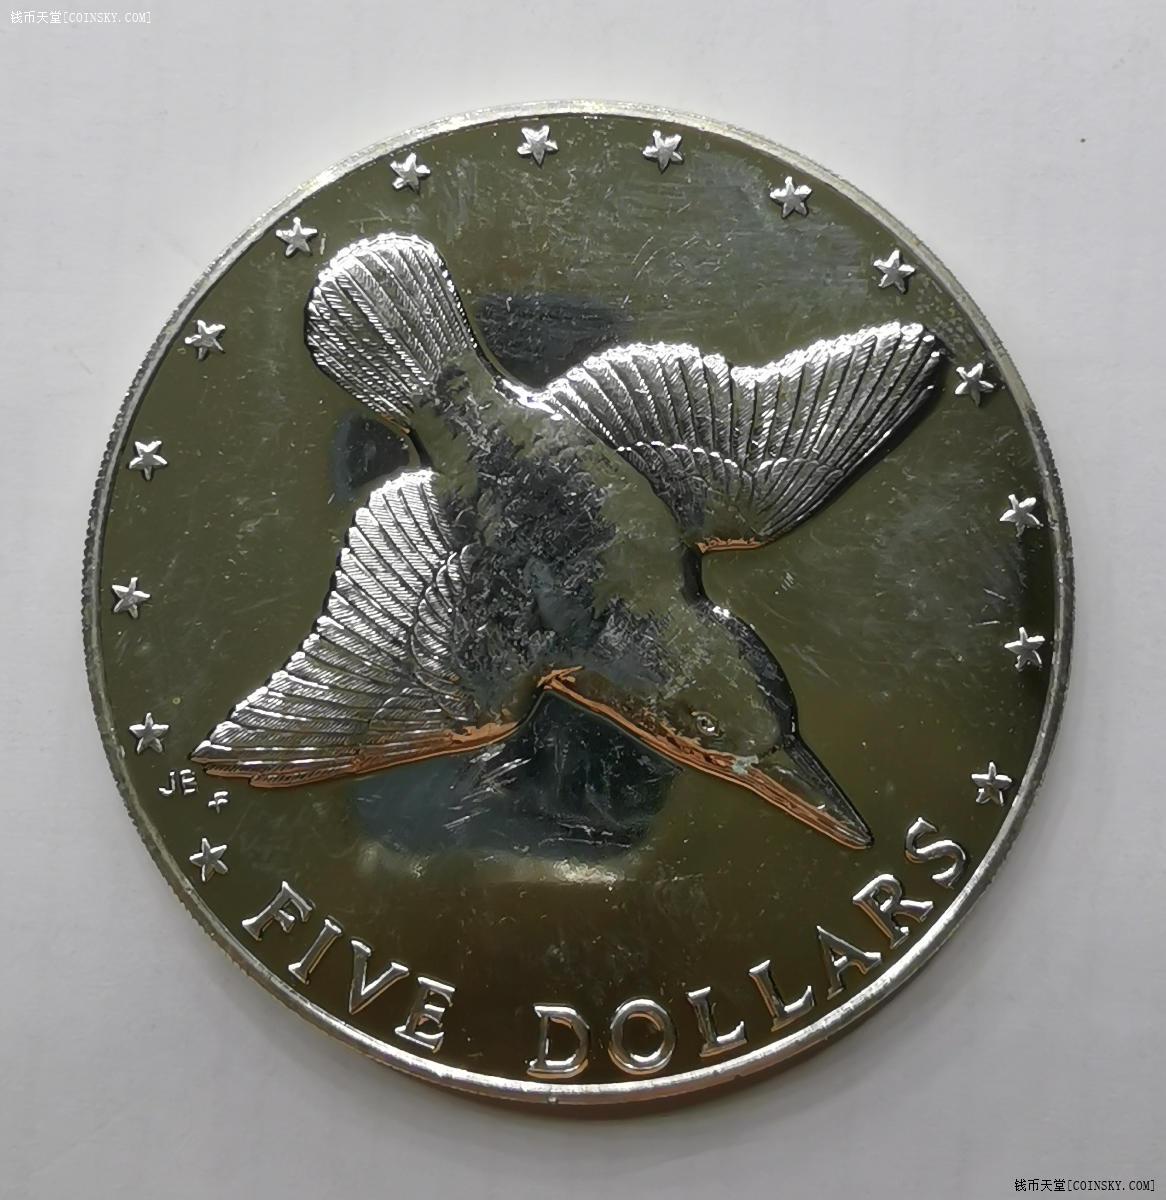 钱币天堂·交易区详情·英属库克群岛1976年5元精制大银币